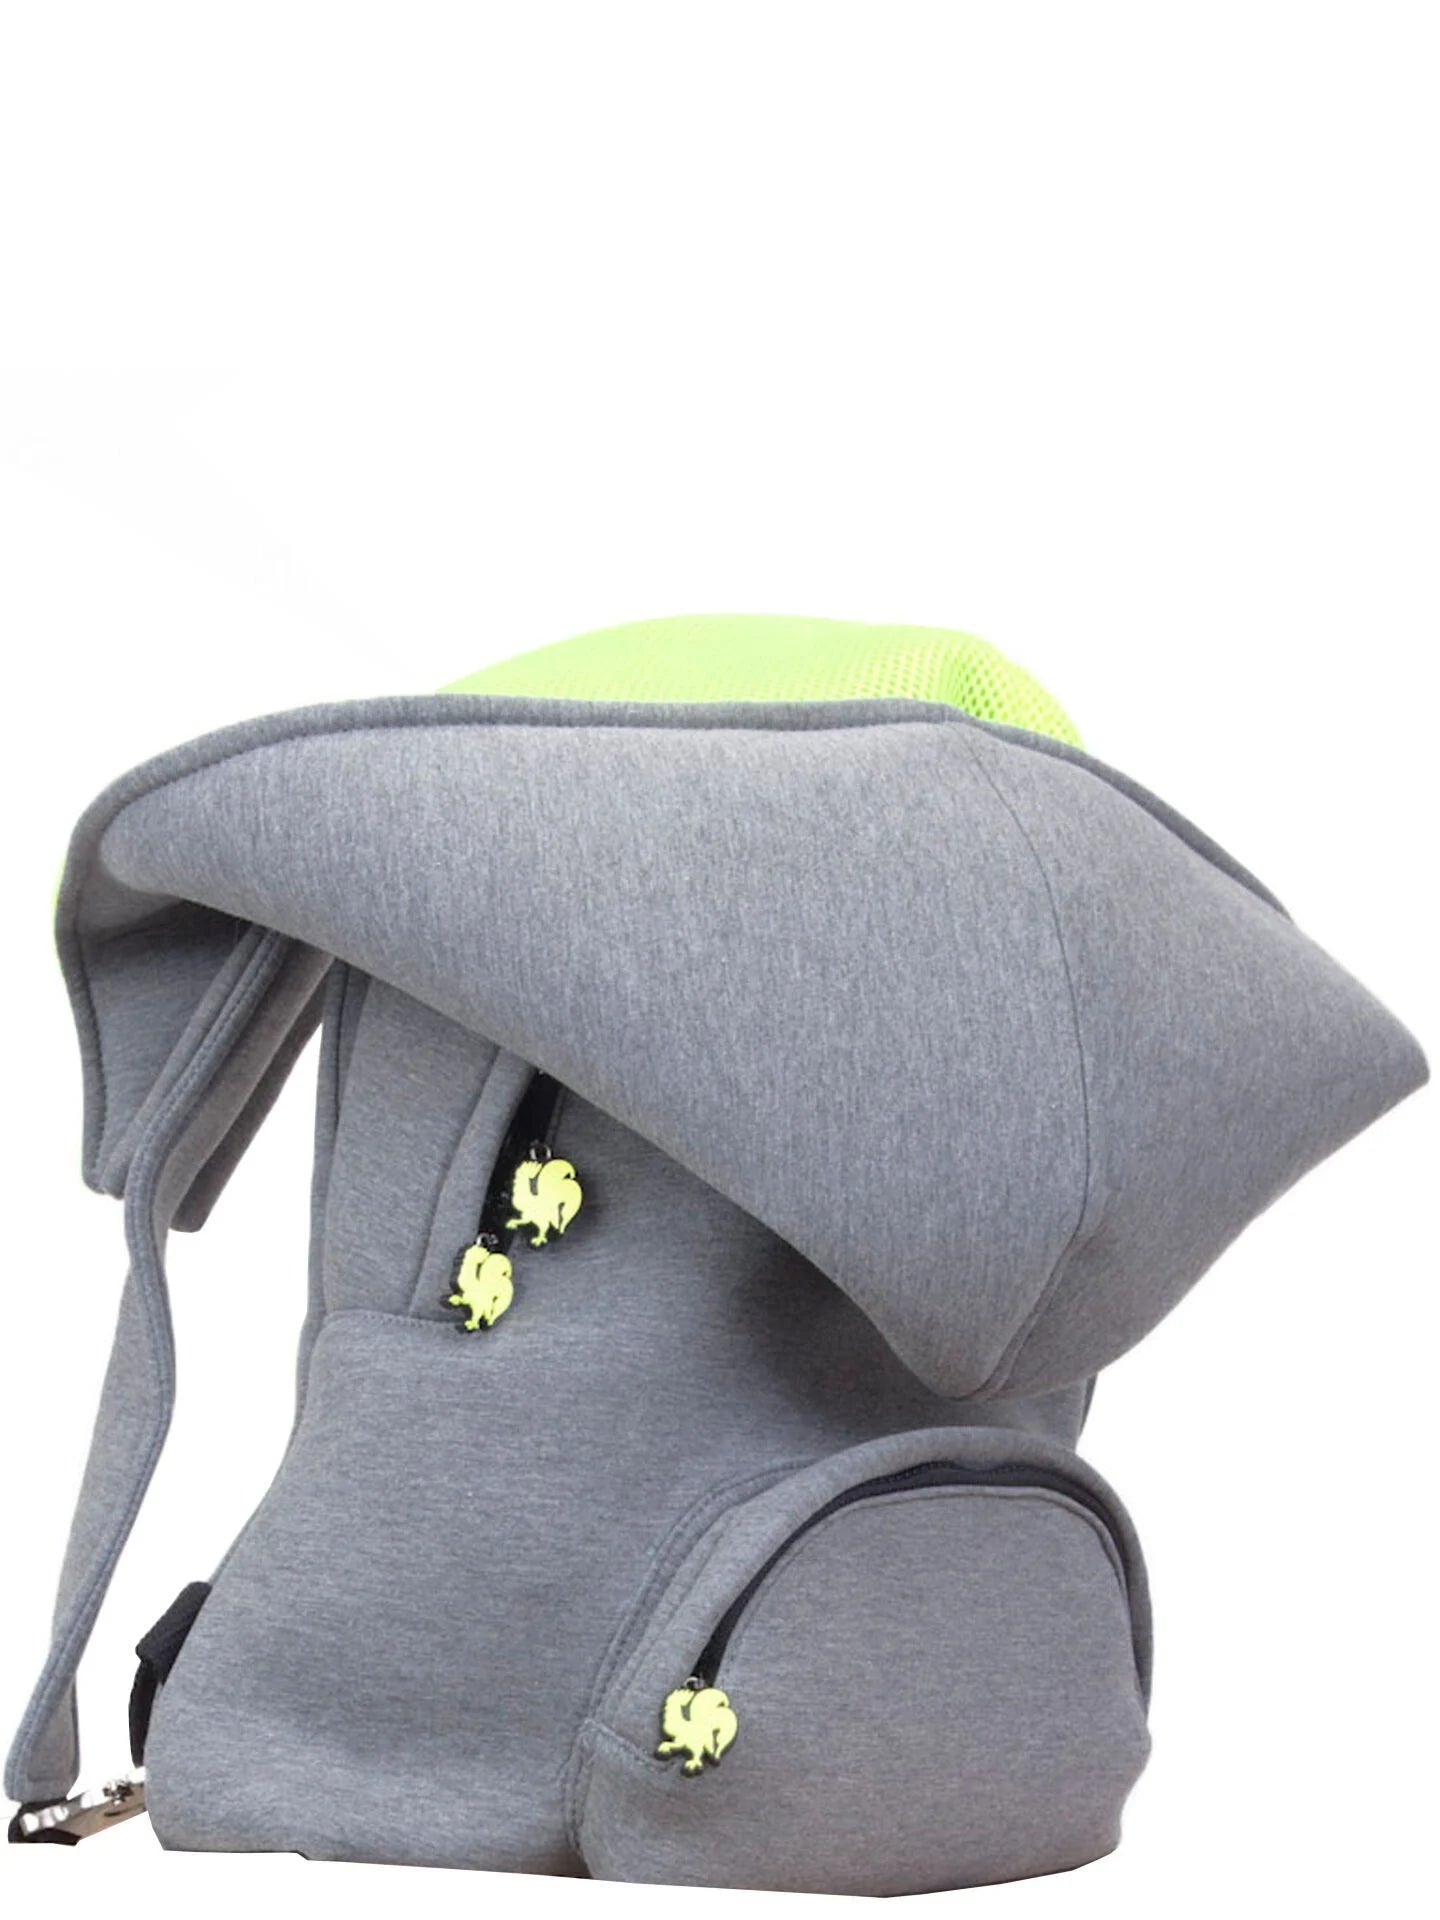 Morikukko Grey Basic Neon Yellow Kids Hooded Backpack